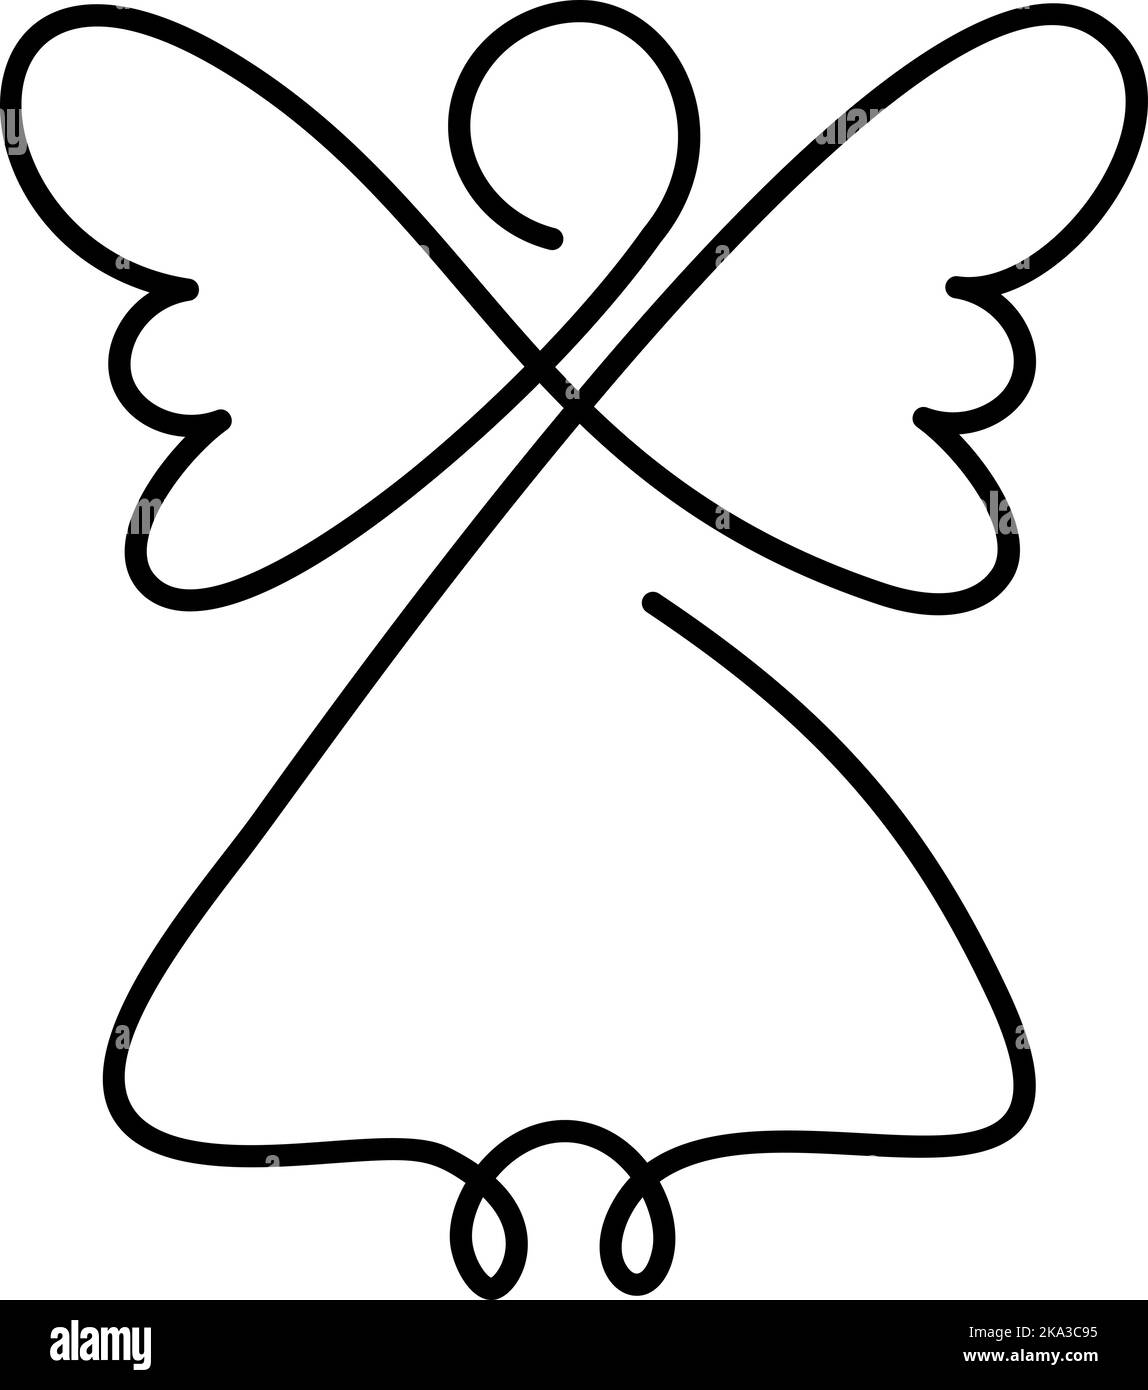 Un ange de Noël à motif vectoriel simple avec des ailes, un dessin continu, un petit tatouage, un imprimé pour les vêtements et le logo, un emblème ou une silhouette Illustration de Vecteur